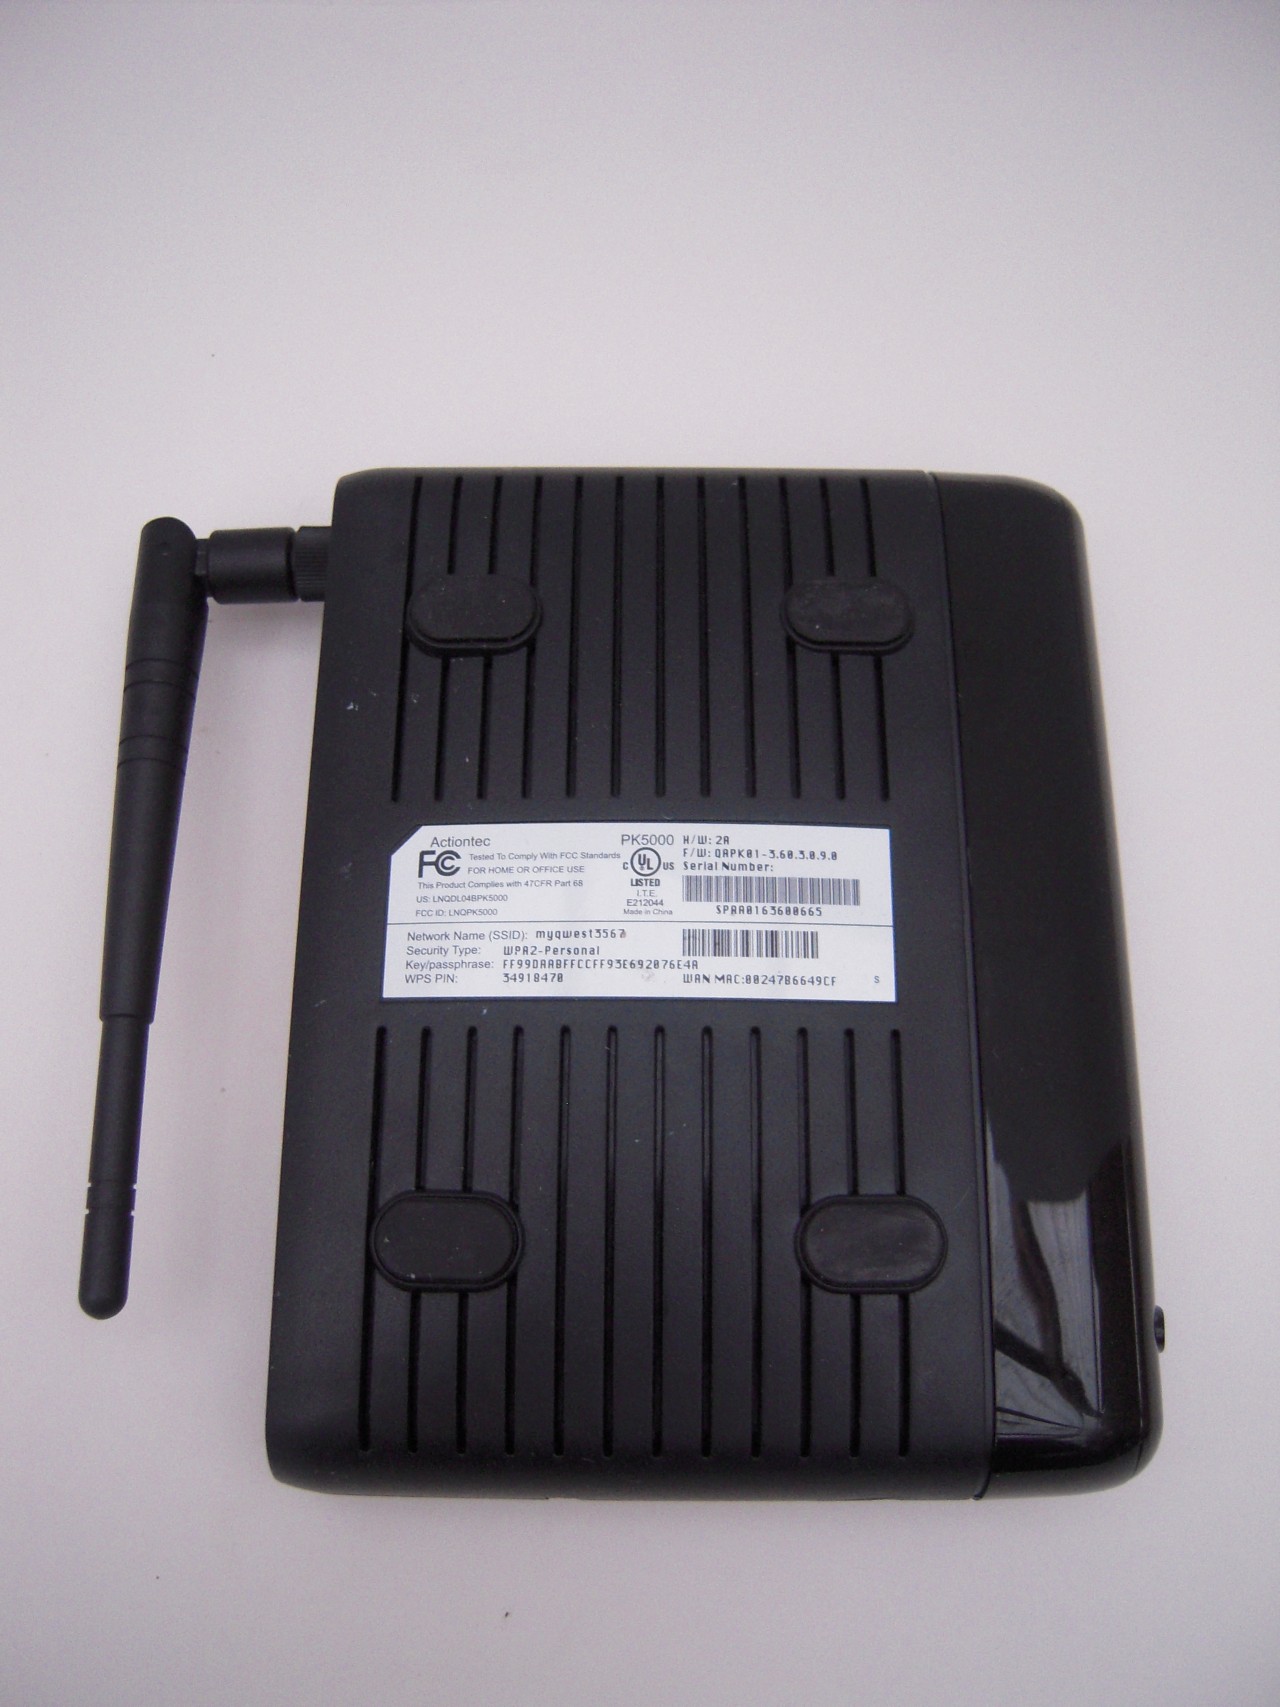 Actiontec PK5000 4-Port Wireless DSL Router Modem Qwest CenturyLink | eBay